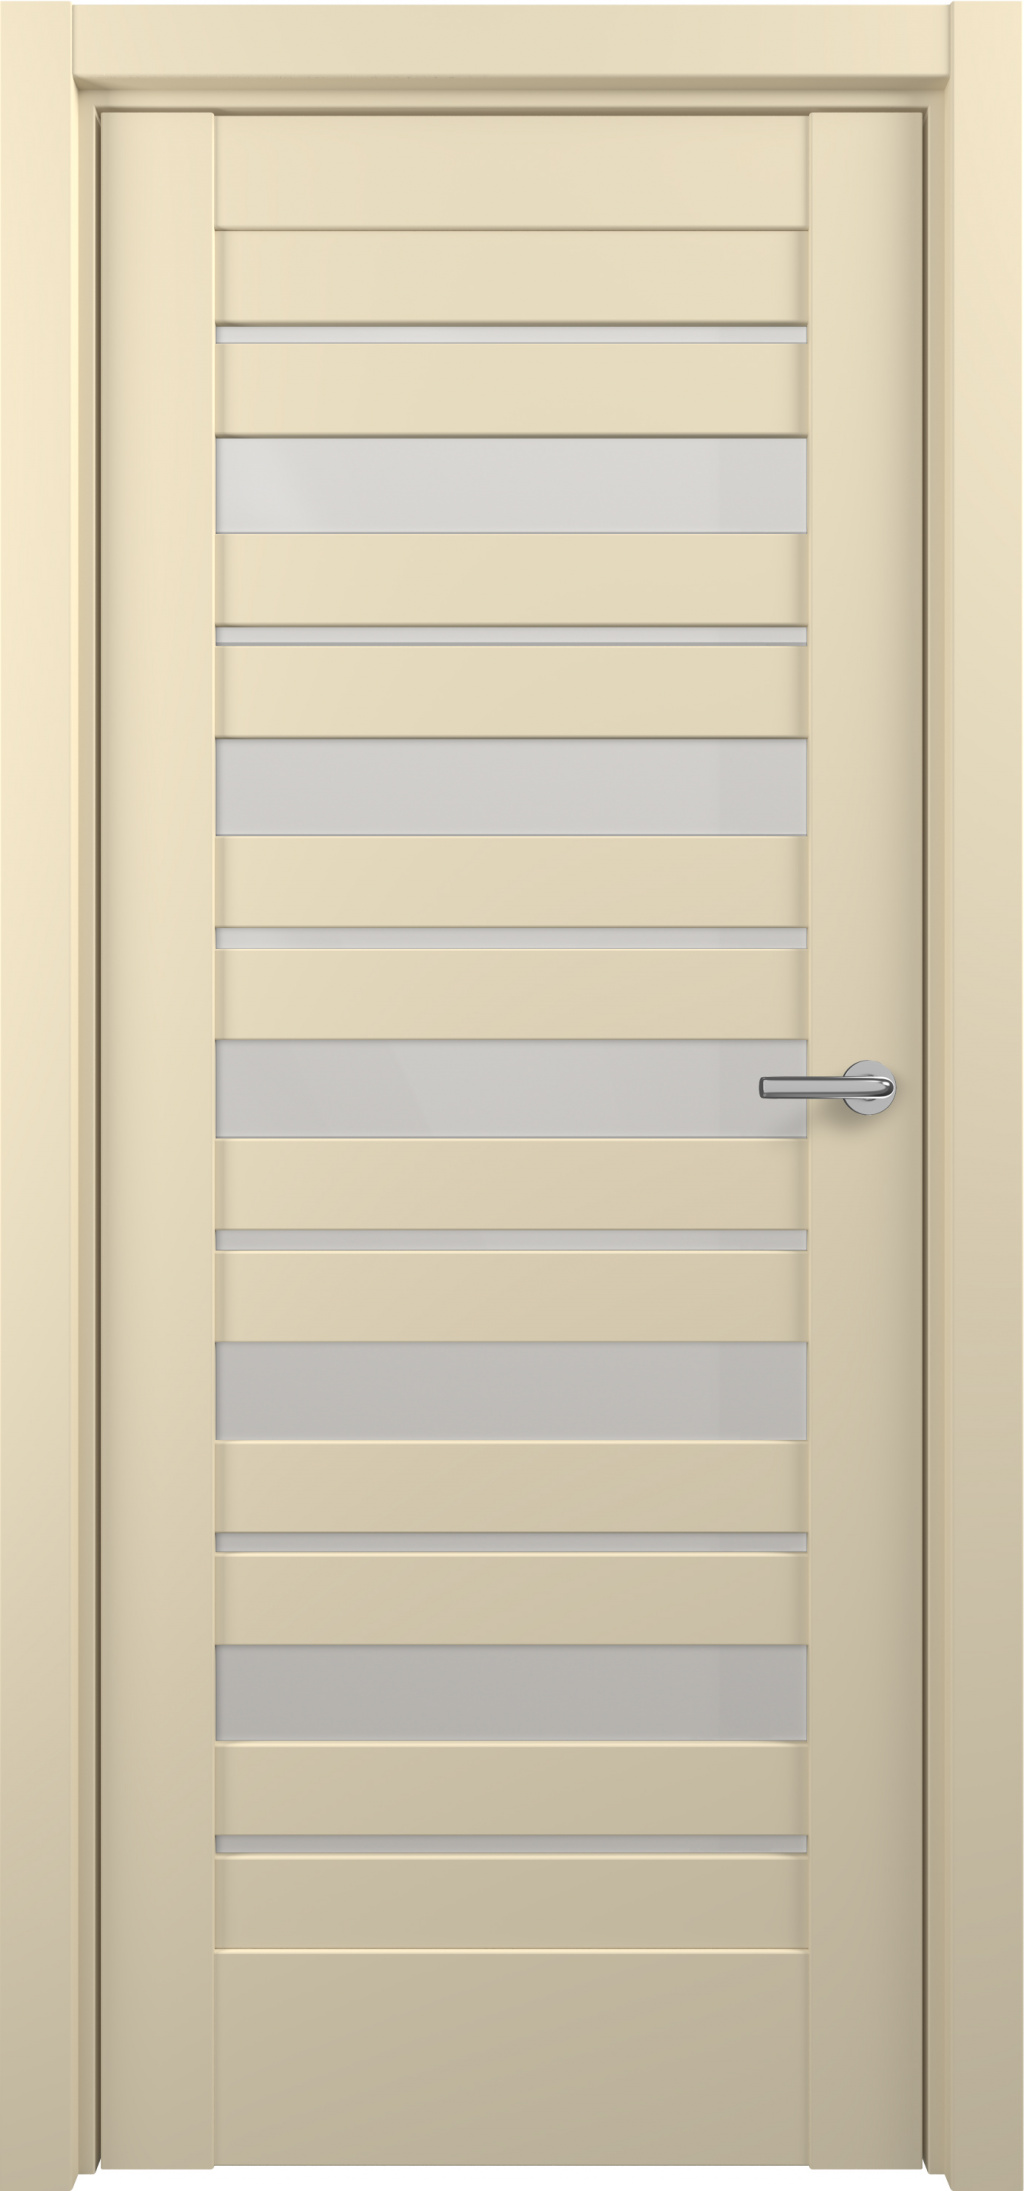 Zadoor Межкомнатная дверь S18, арт. 15825 - фото №1